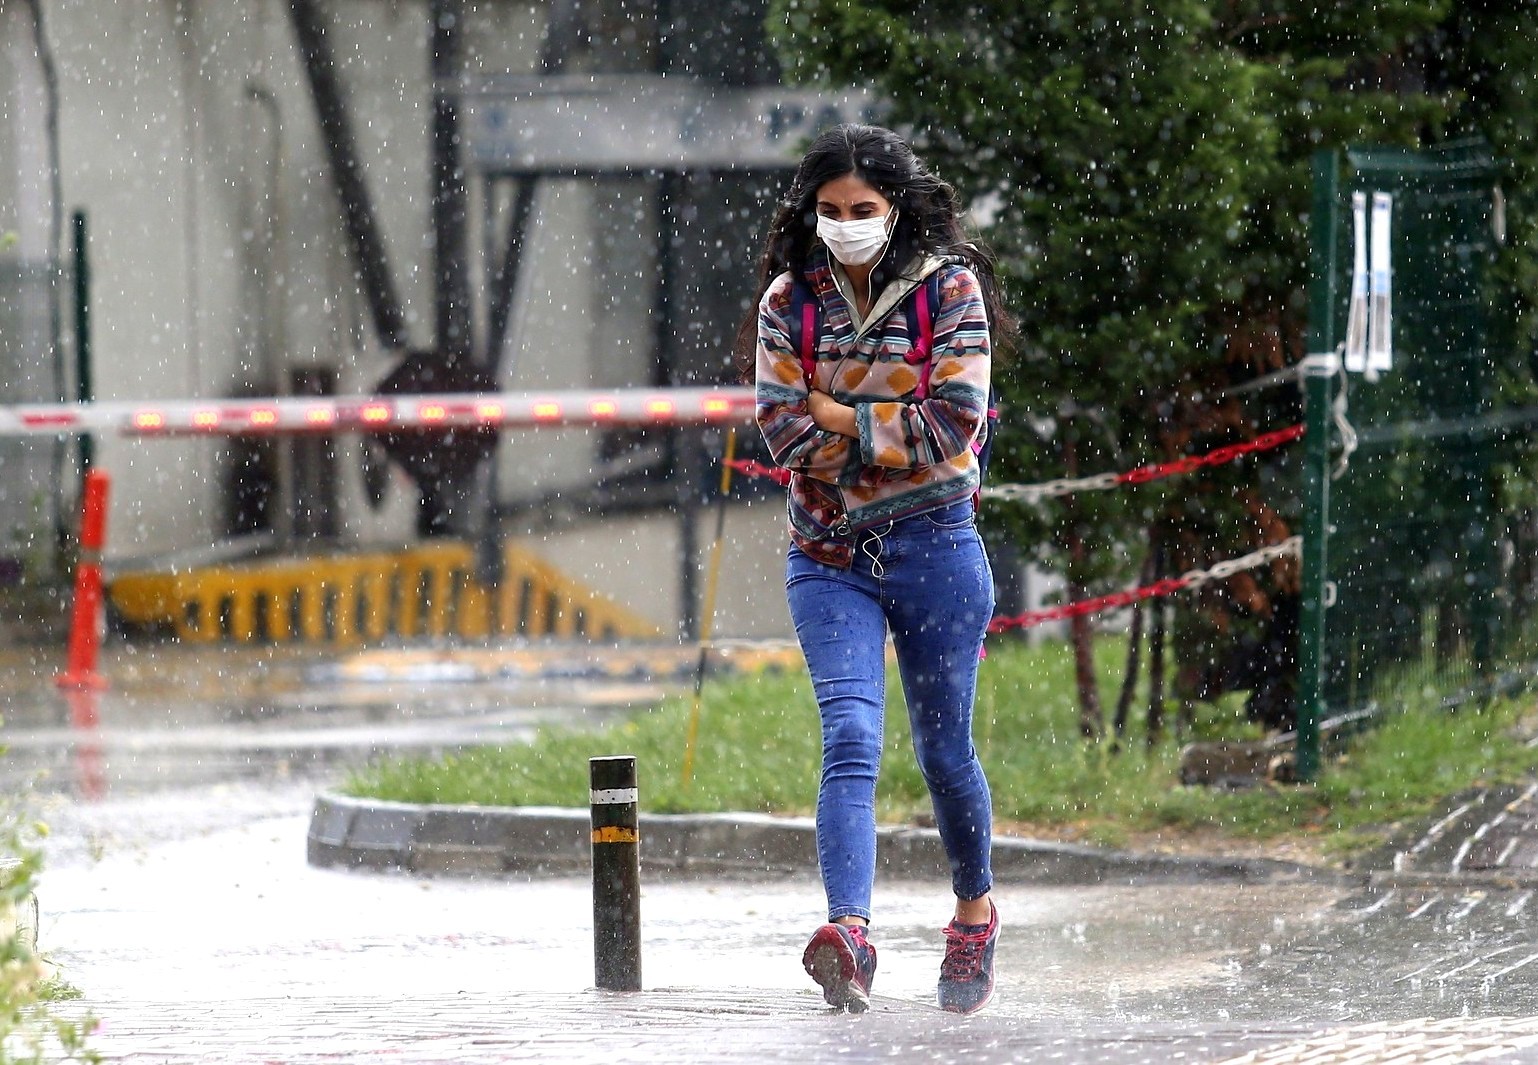 Doğu’da hava sıcaklığı mevsim normallerinin 2 ila 5 derece altına düşecek #erzincan